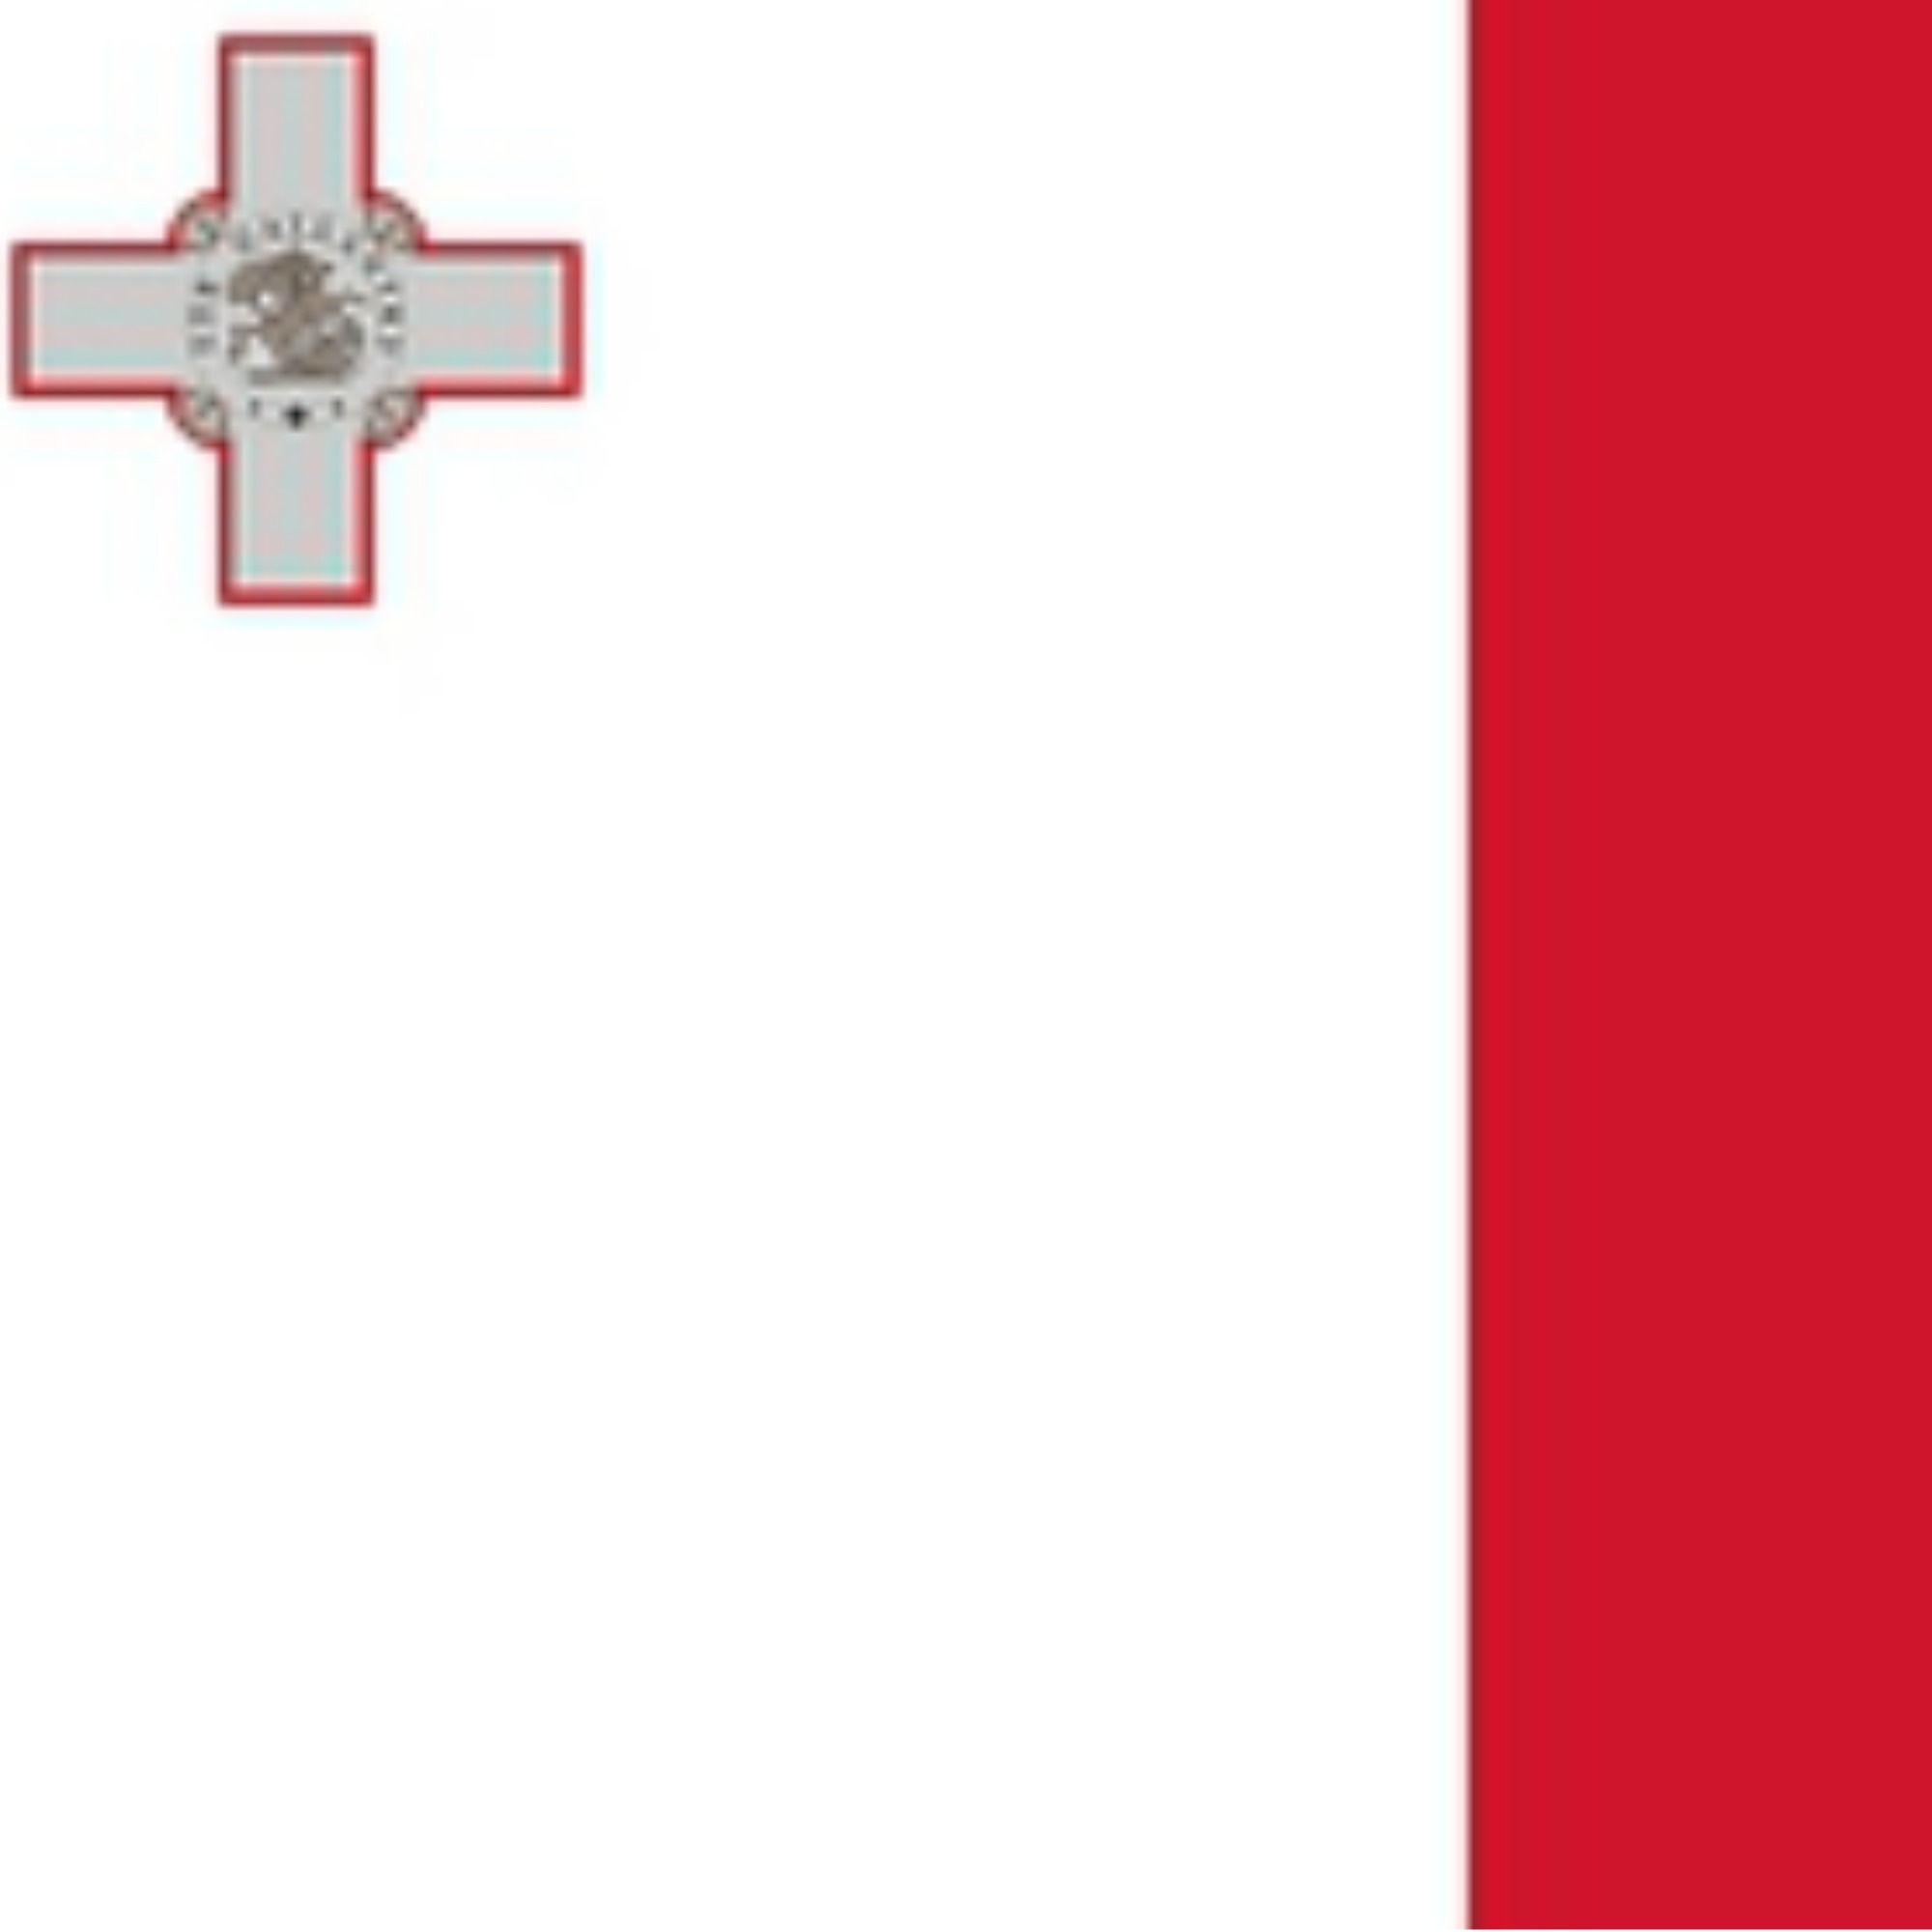 Consulat honorari de Malta (València)